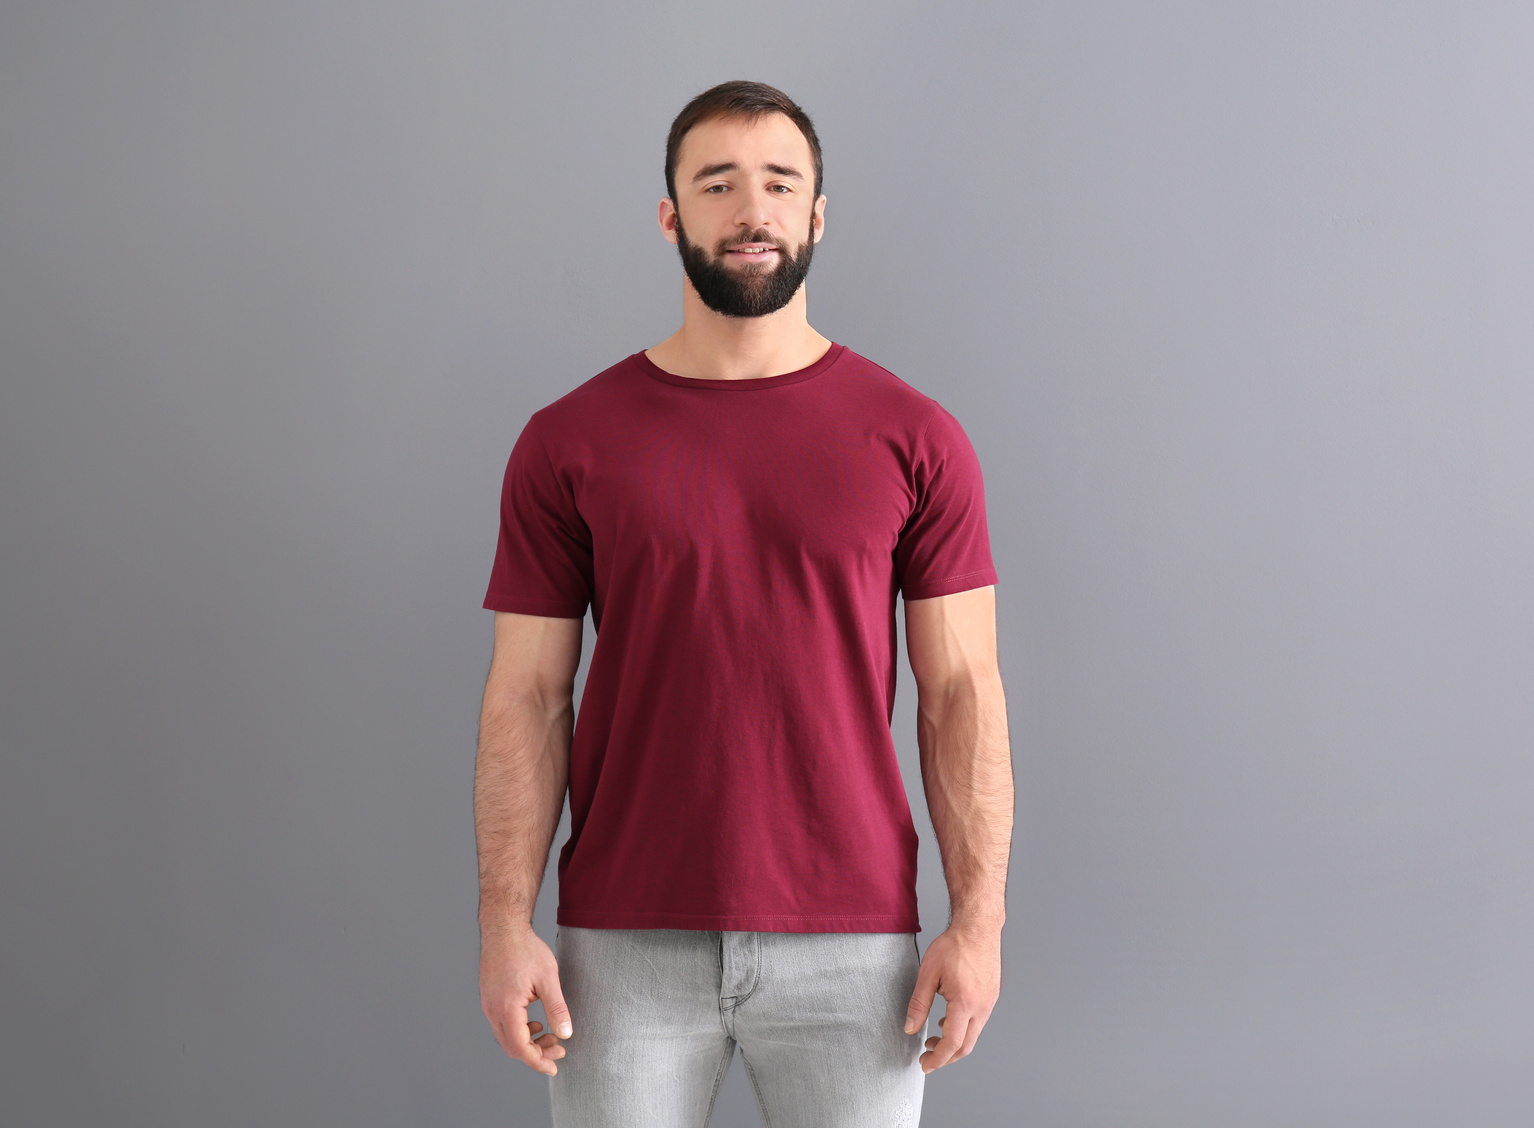 Mockup T-Shirt Design for Men